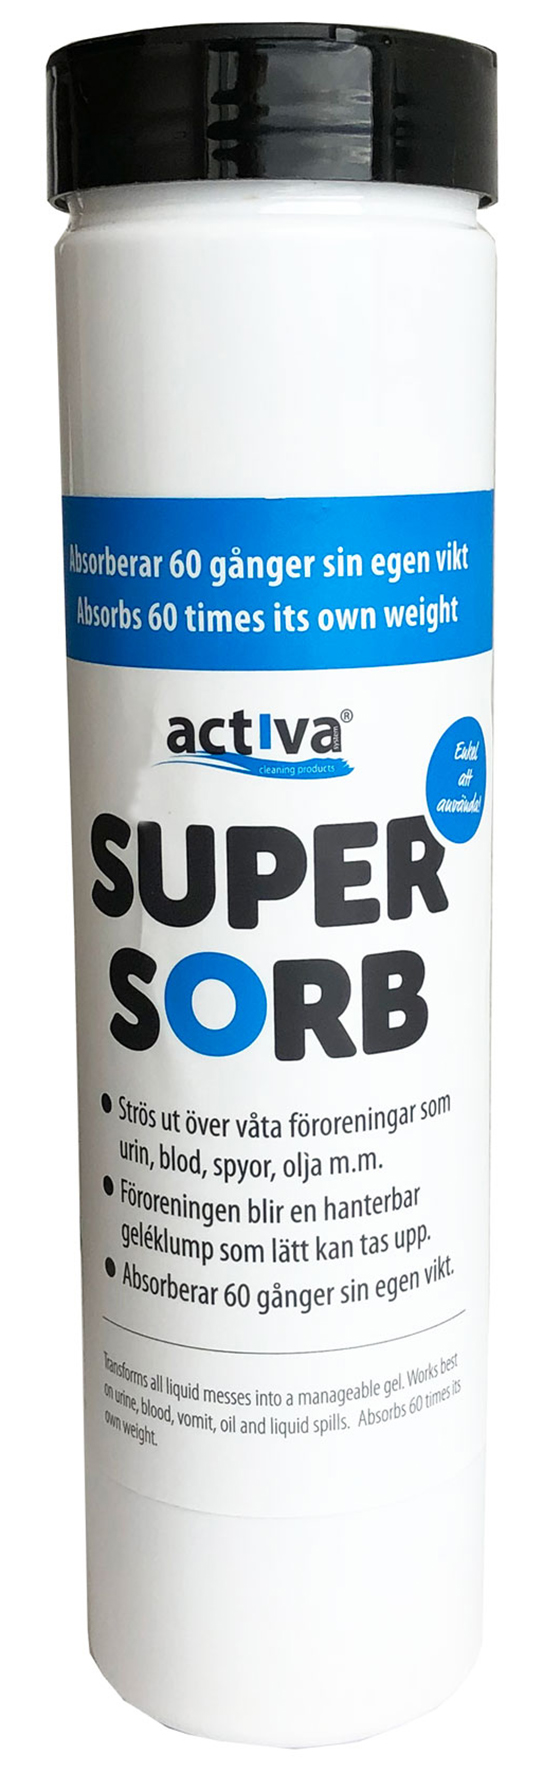 [8556466] Activa Supersorb 350 gr